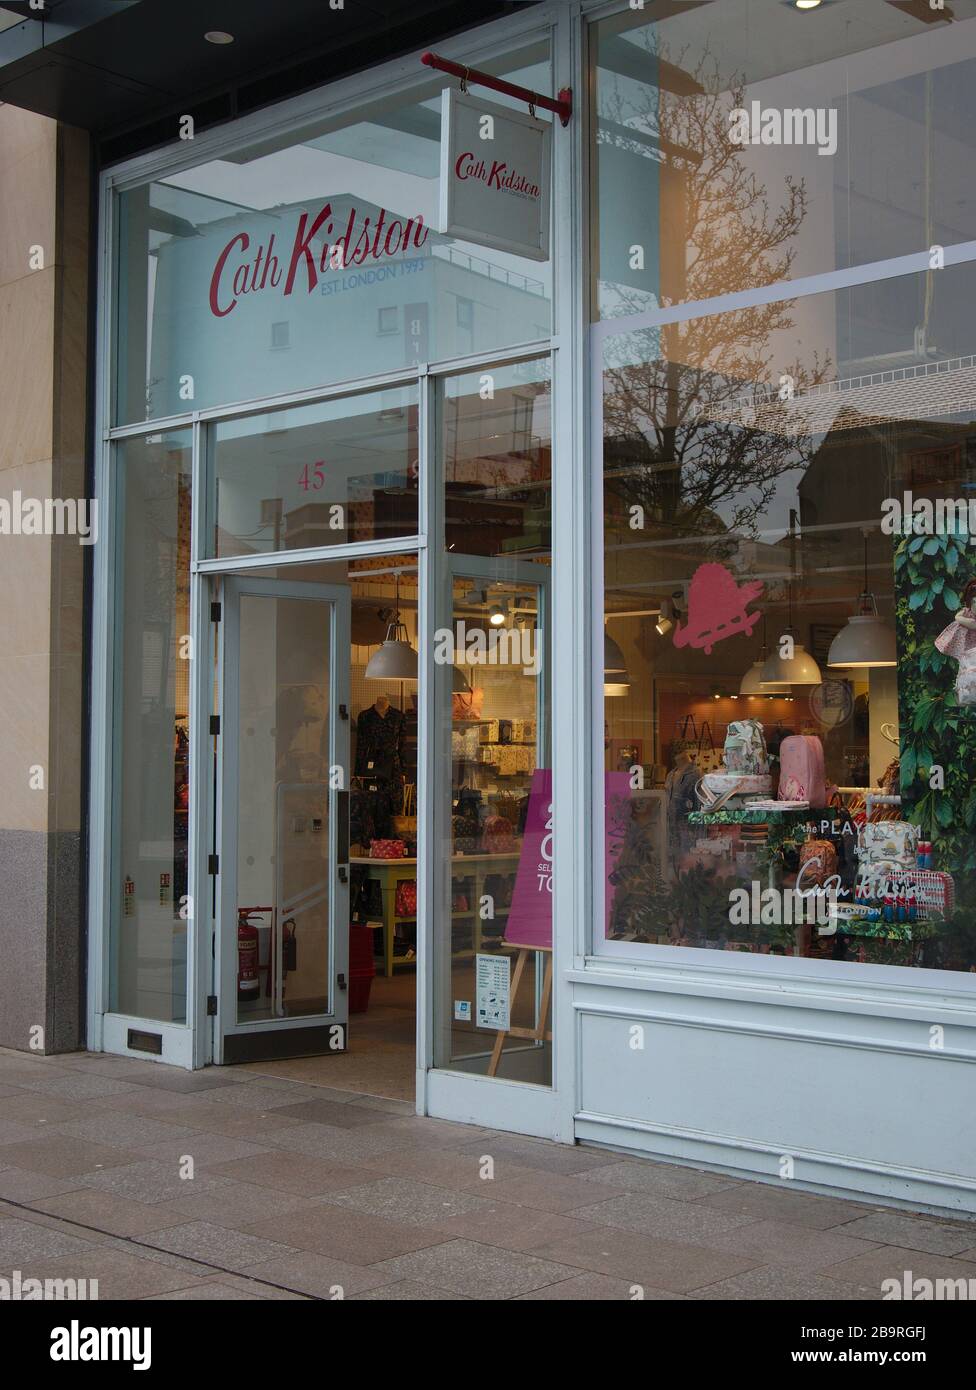 Cath Kidston nel centro commerciale di Cardff prima della pandemia di Coronavirus ha costretto il rivenditore a chiudere i negozi e cercare amministratori. Foto Stock